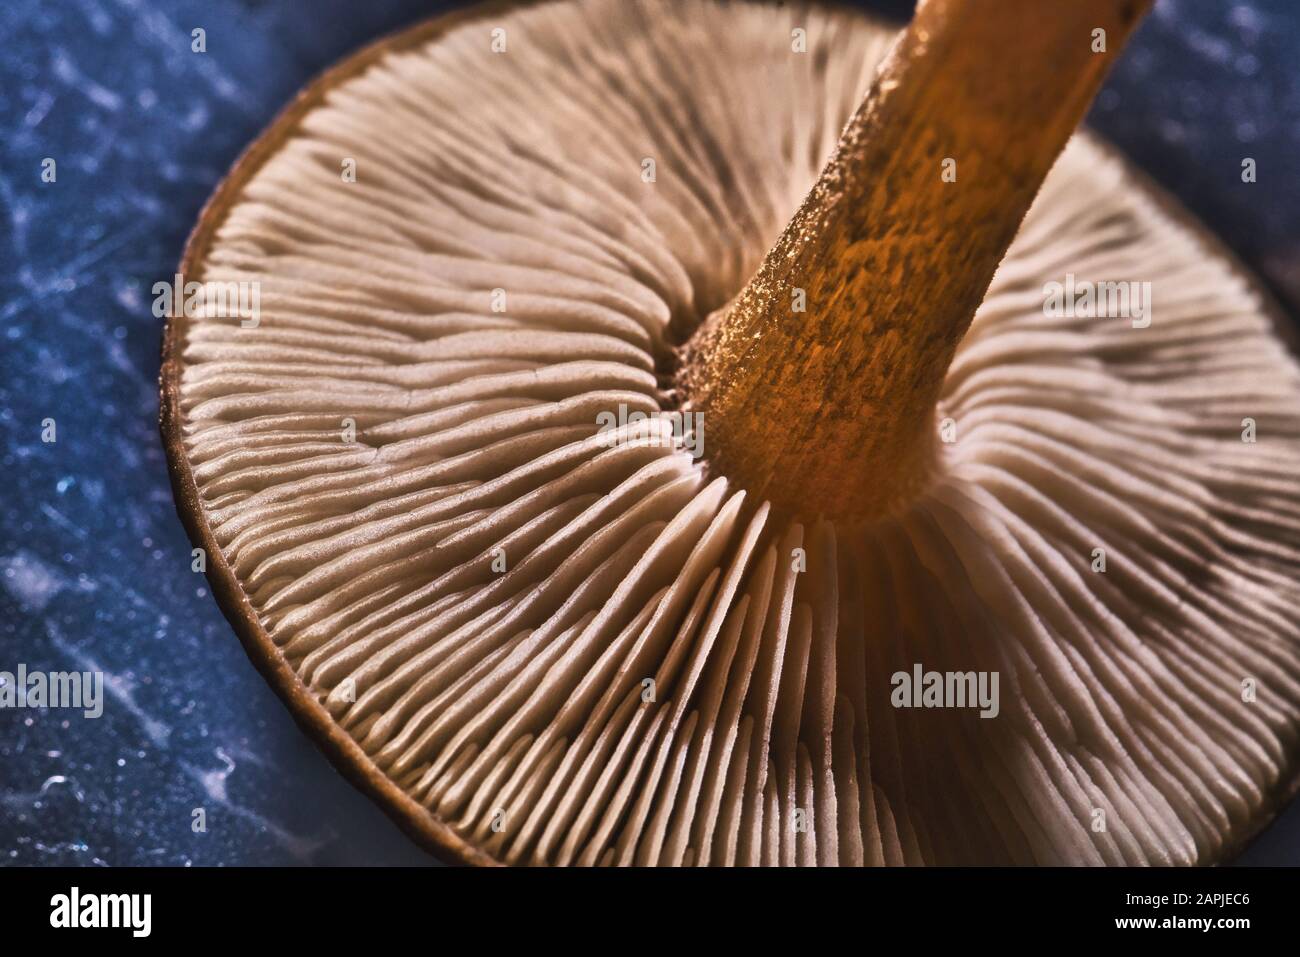 Horizontales Foto mit Detailansicht auf dem unteren Teil des Pilzkopfs. Der Stamm hat eine schöne braune Farbe und der Pilz ist auf blauem Grund platziert. Stockfoto